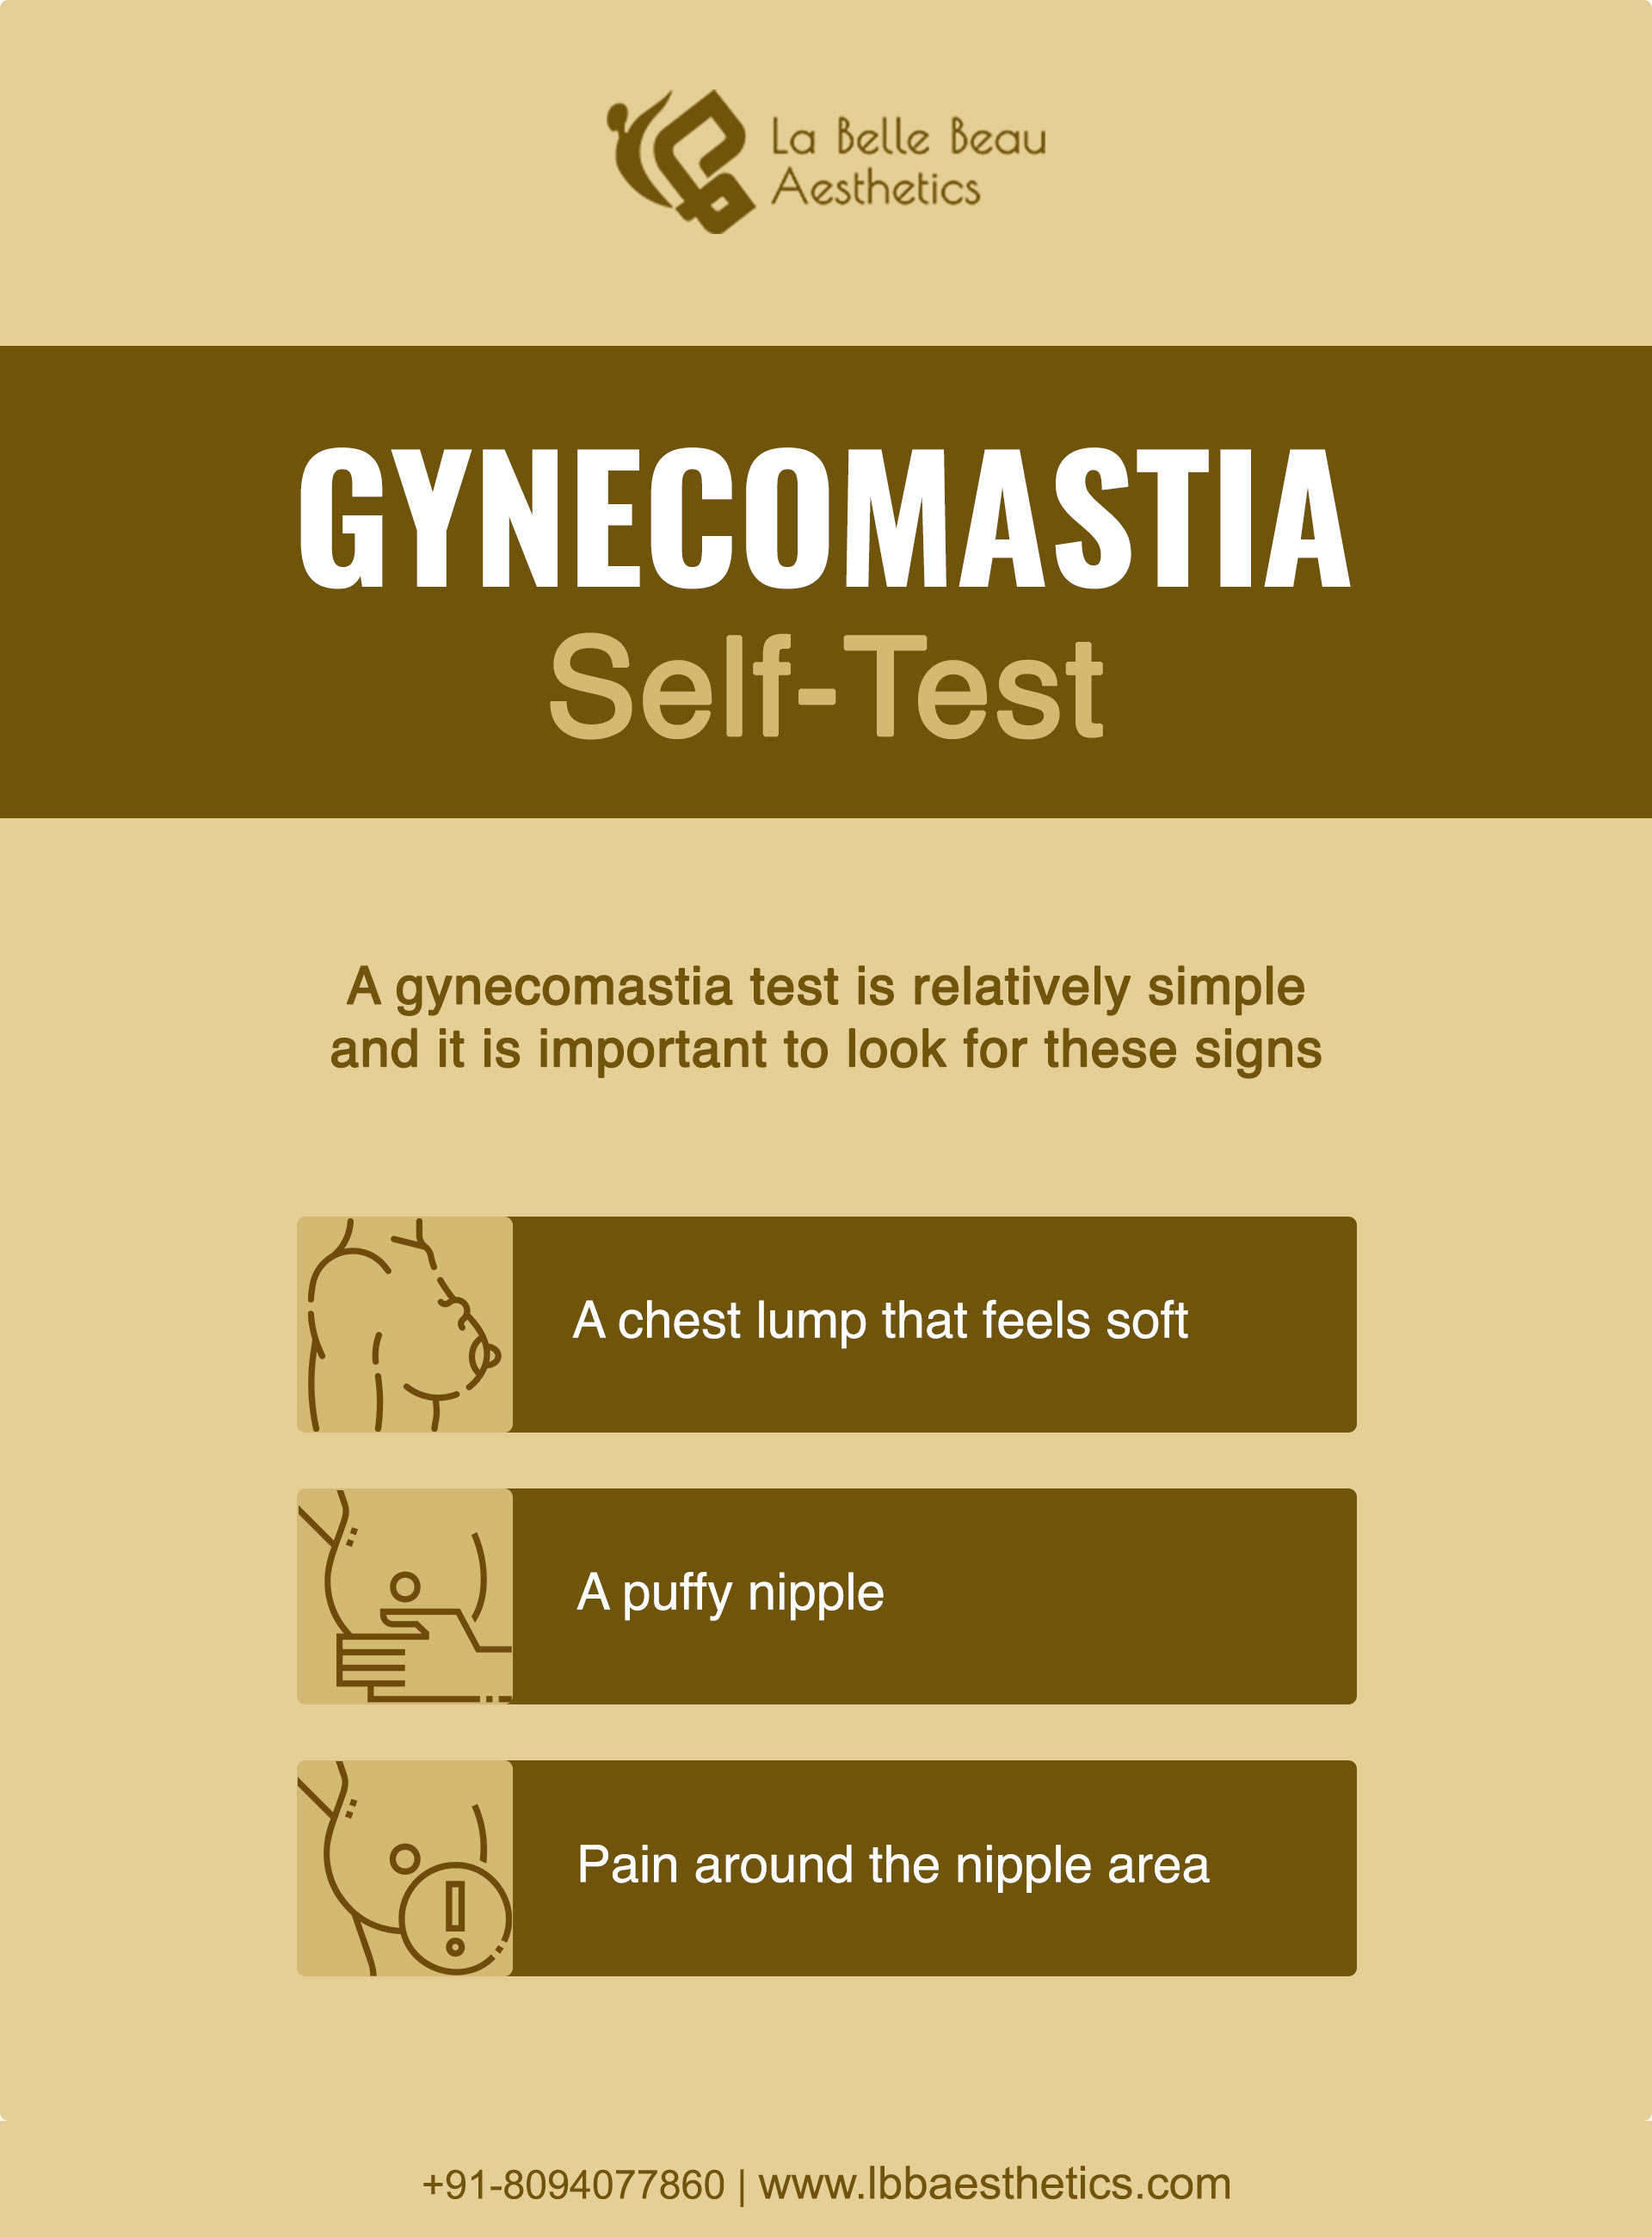 diagnose gynecomastia through gynecomastia tests